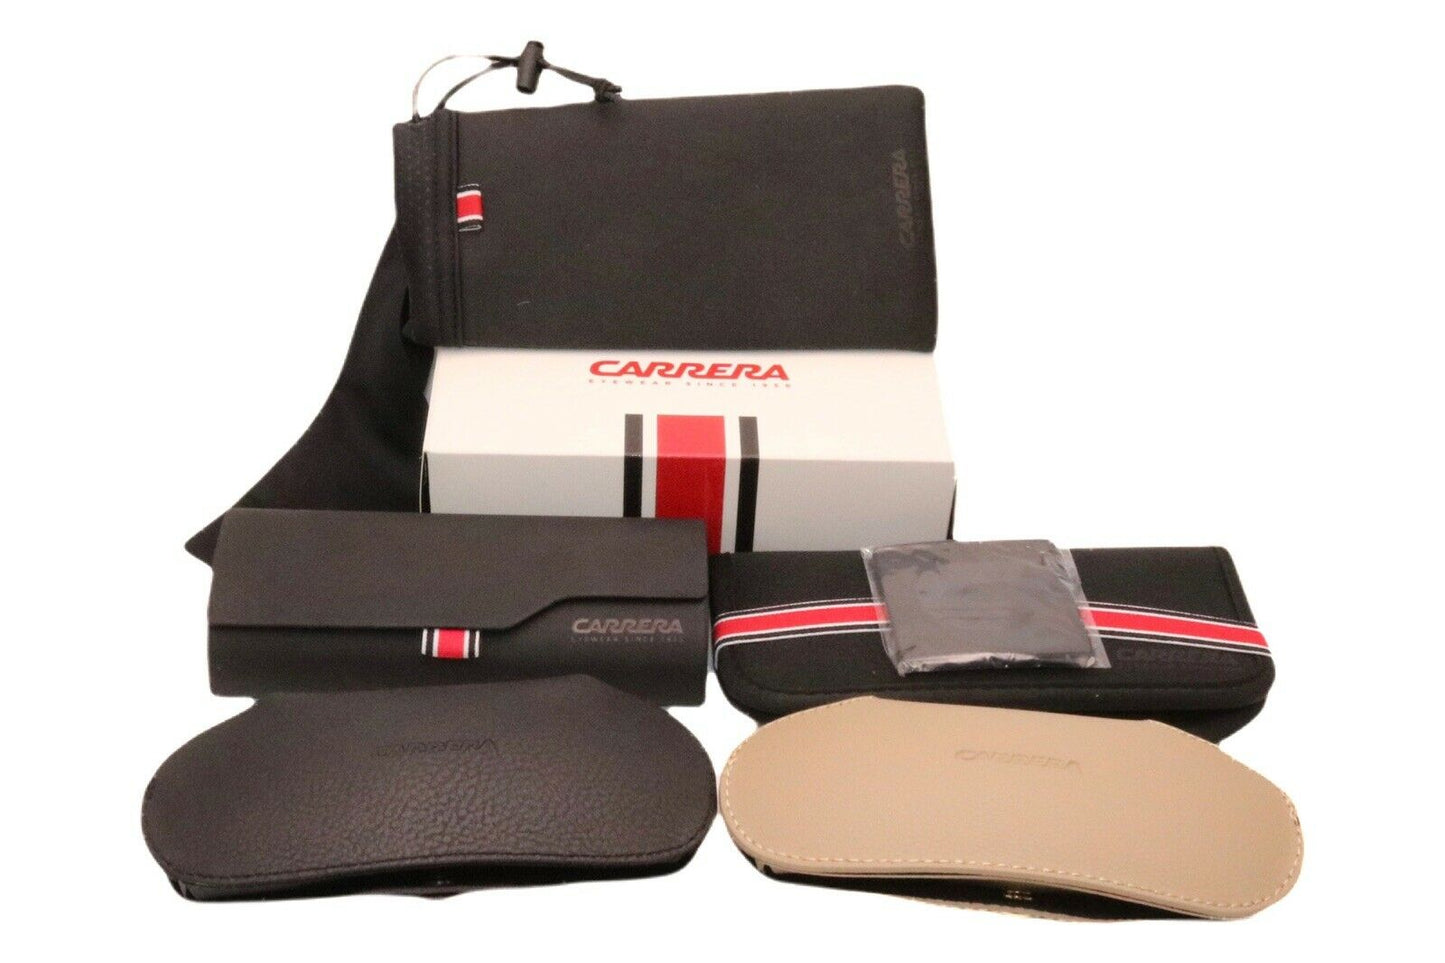 Carrera FLAGLAB 11-0003 IR 64mm New Sunglasses